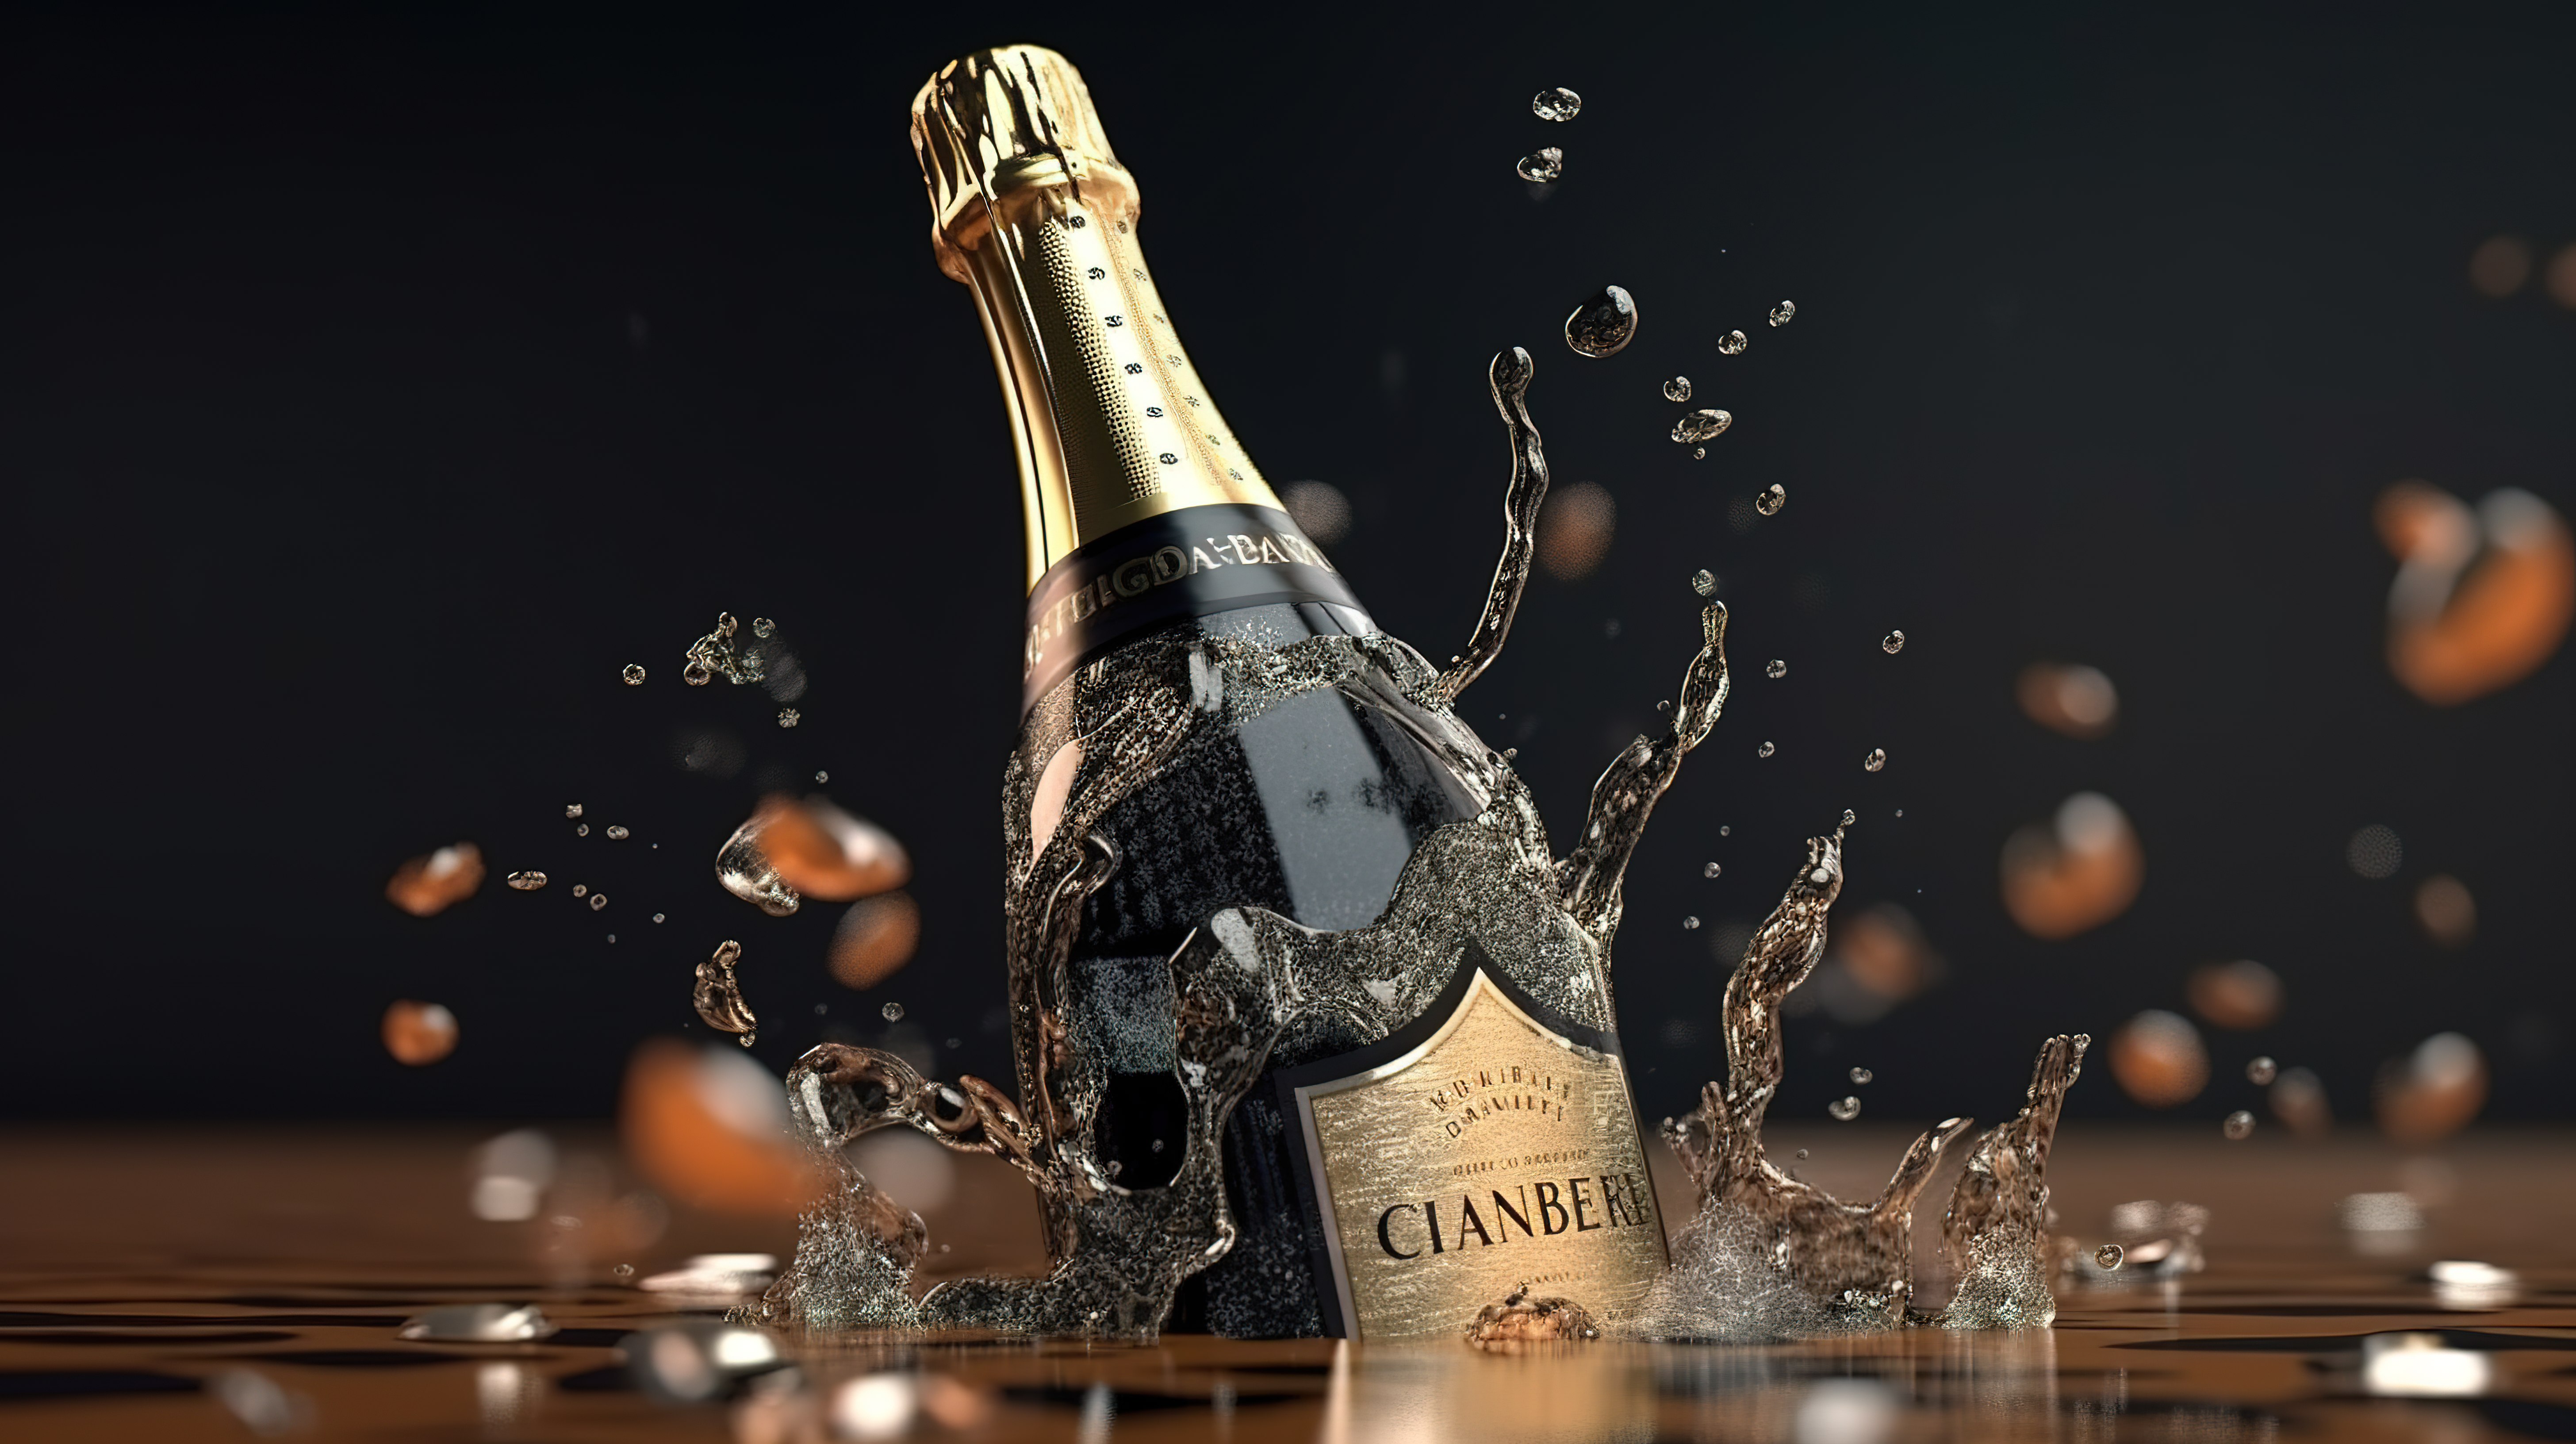 漂浮在空气中的香槟瓶模型 3D 渲染图片